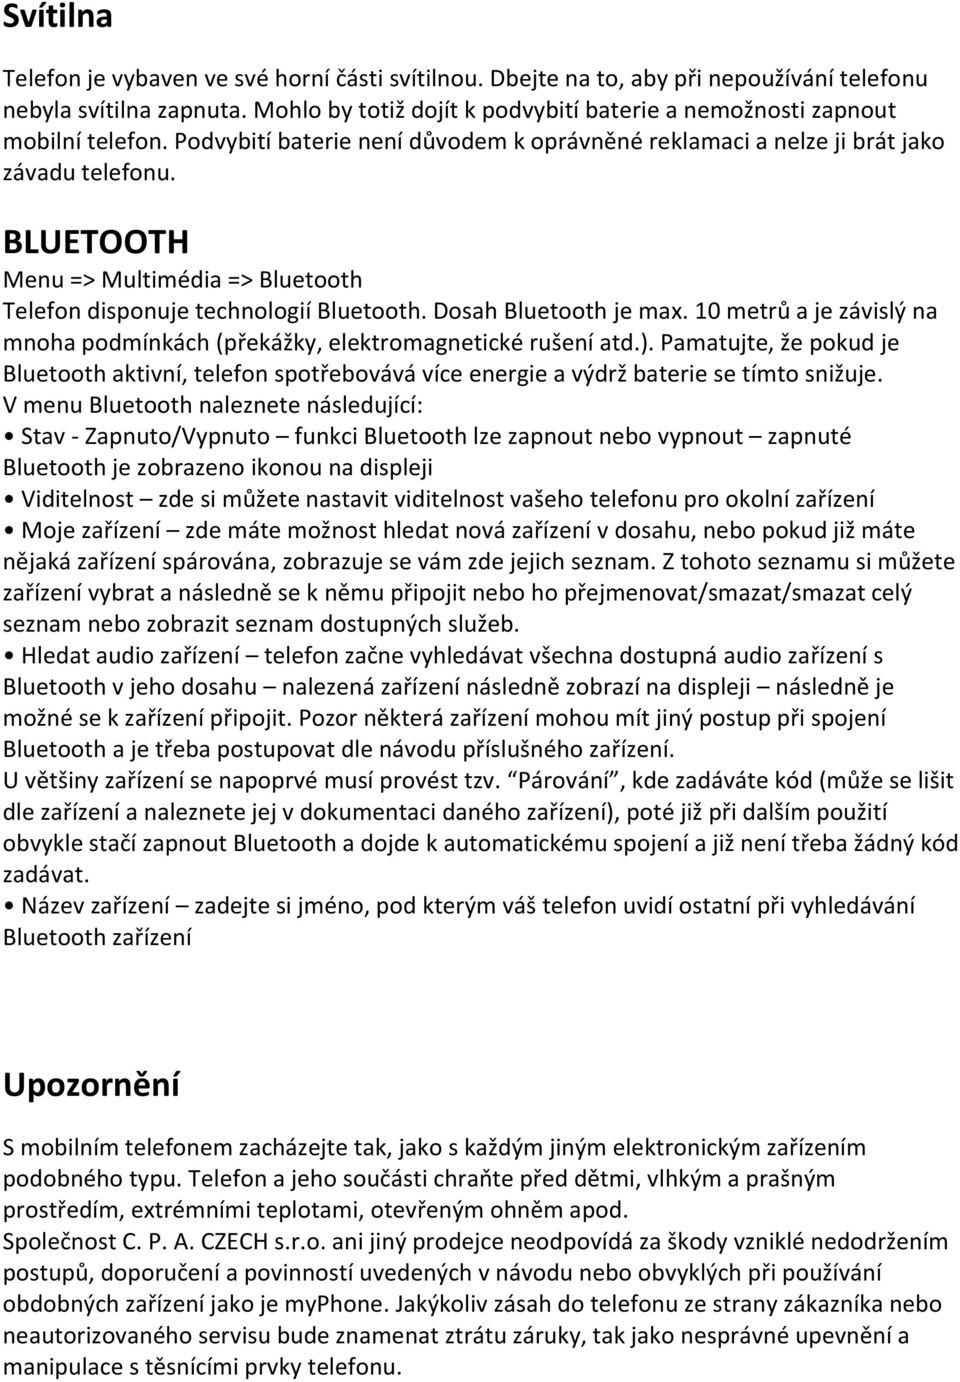 BLUETOOTH Menu => Multimédia => Bluetooth Telefon disponuje technologií Bluetooth. Dosah Bluetooth je max. 10 metrů a je závislý na mnoha podmínkách (překážky, elektromagnetické rušení atd.).